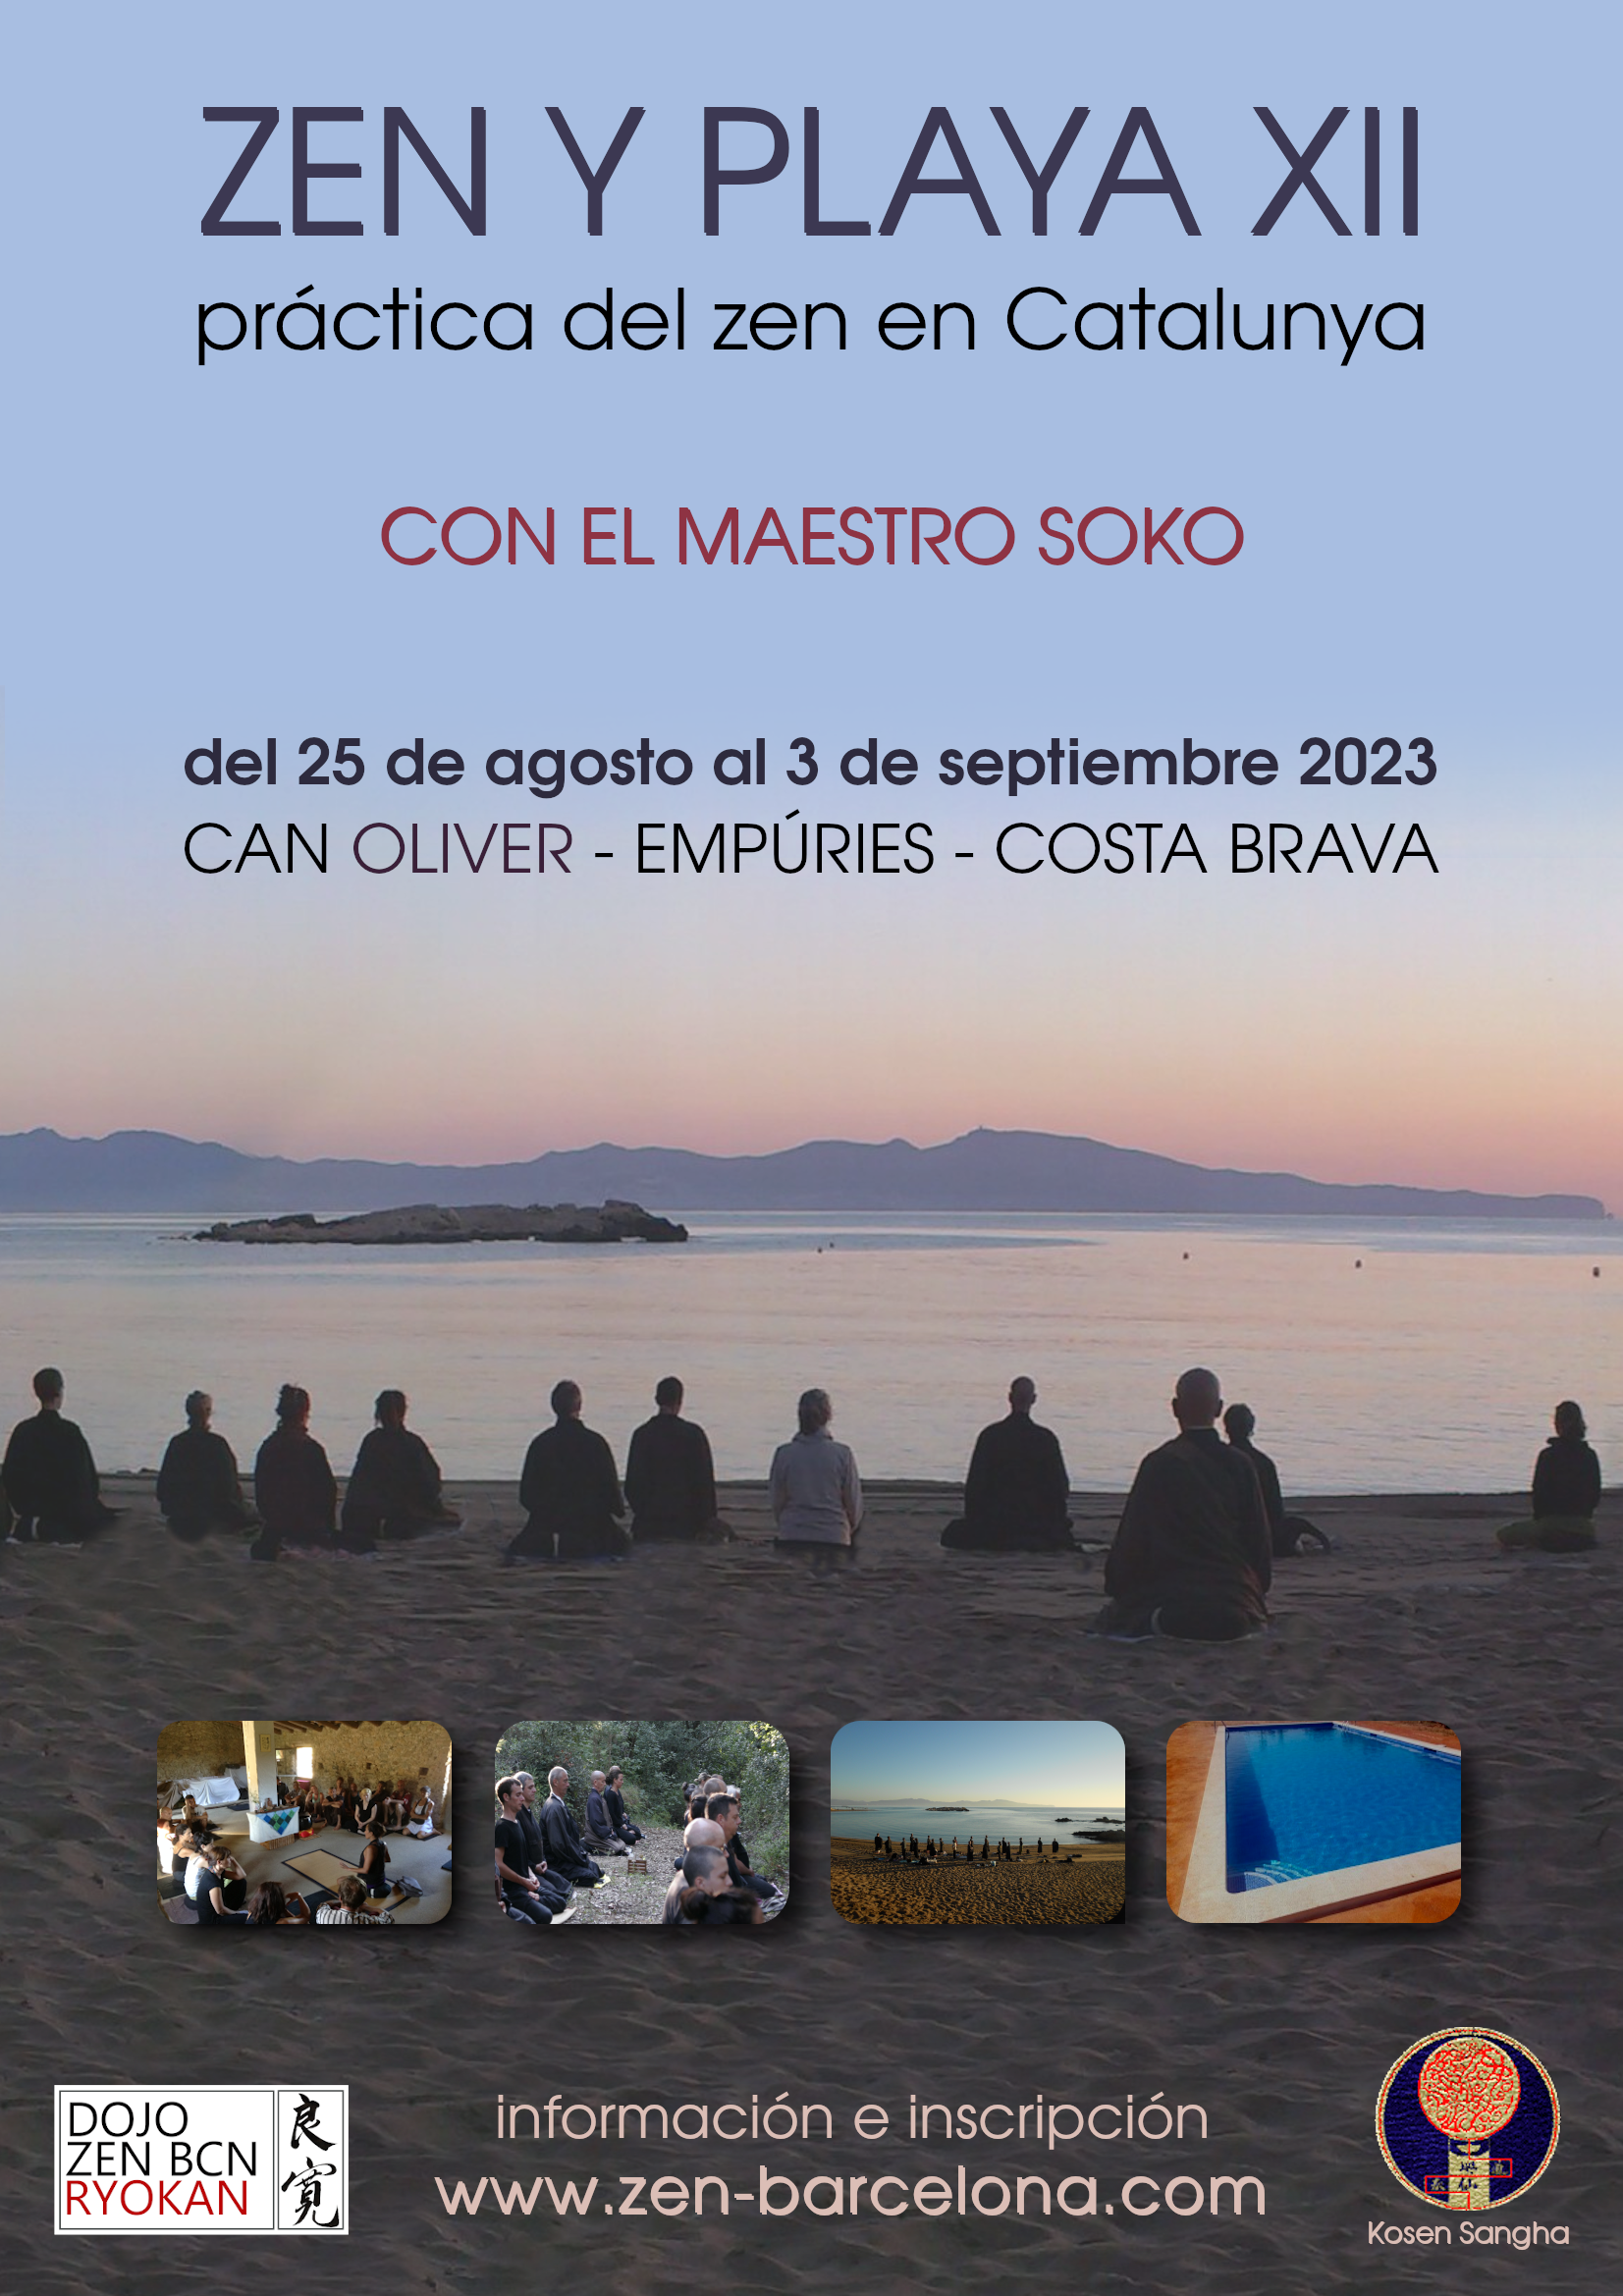 Práctica del zen en Catalunya Agosto 2023